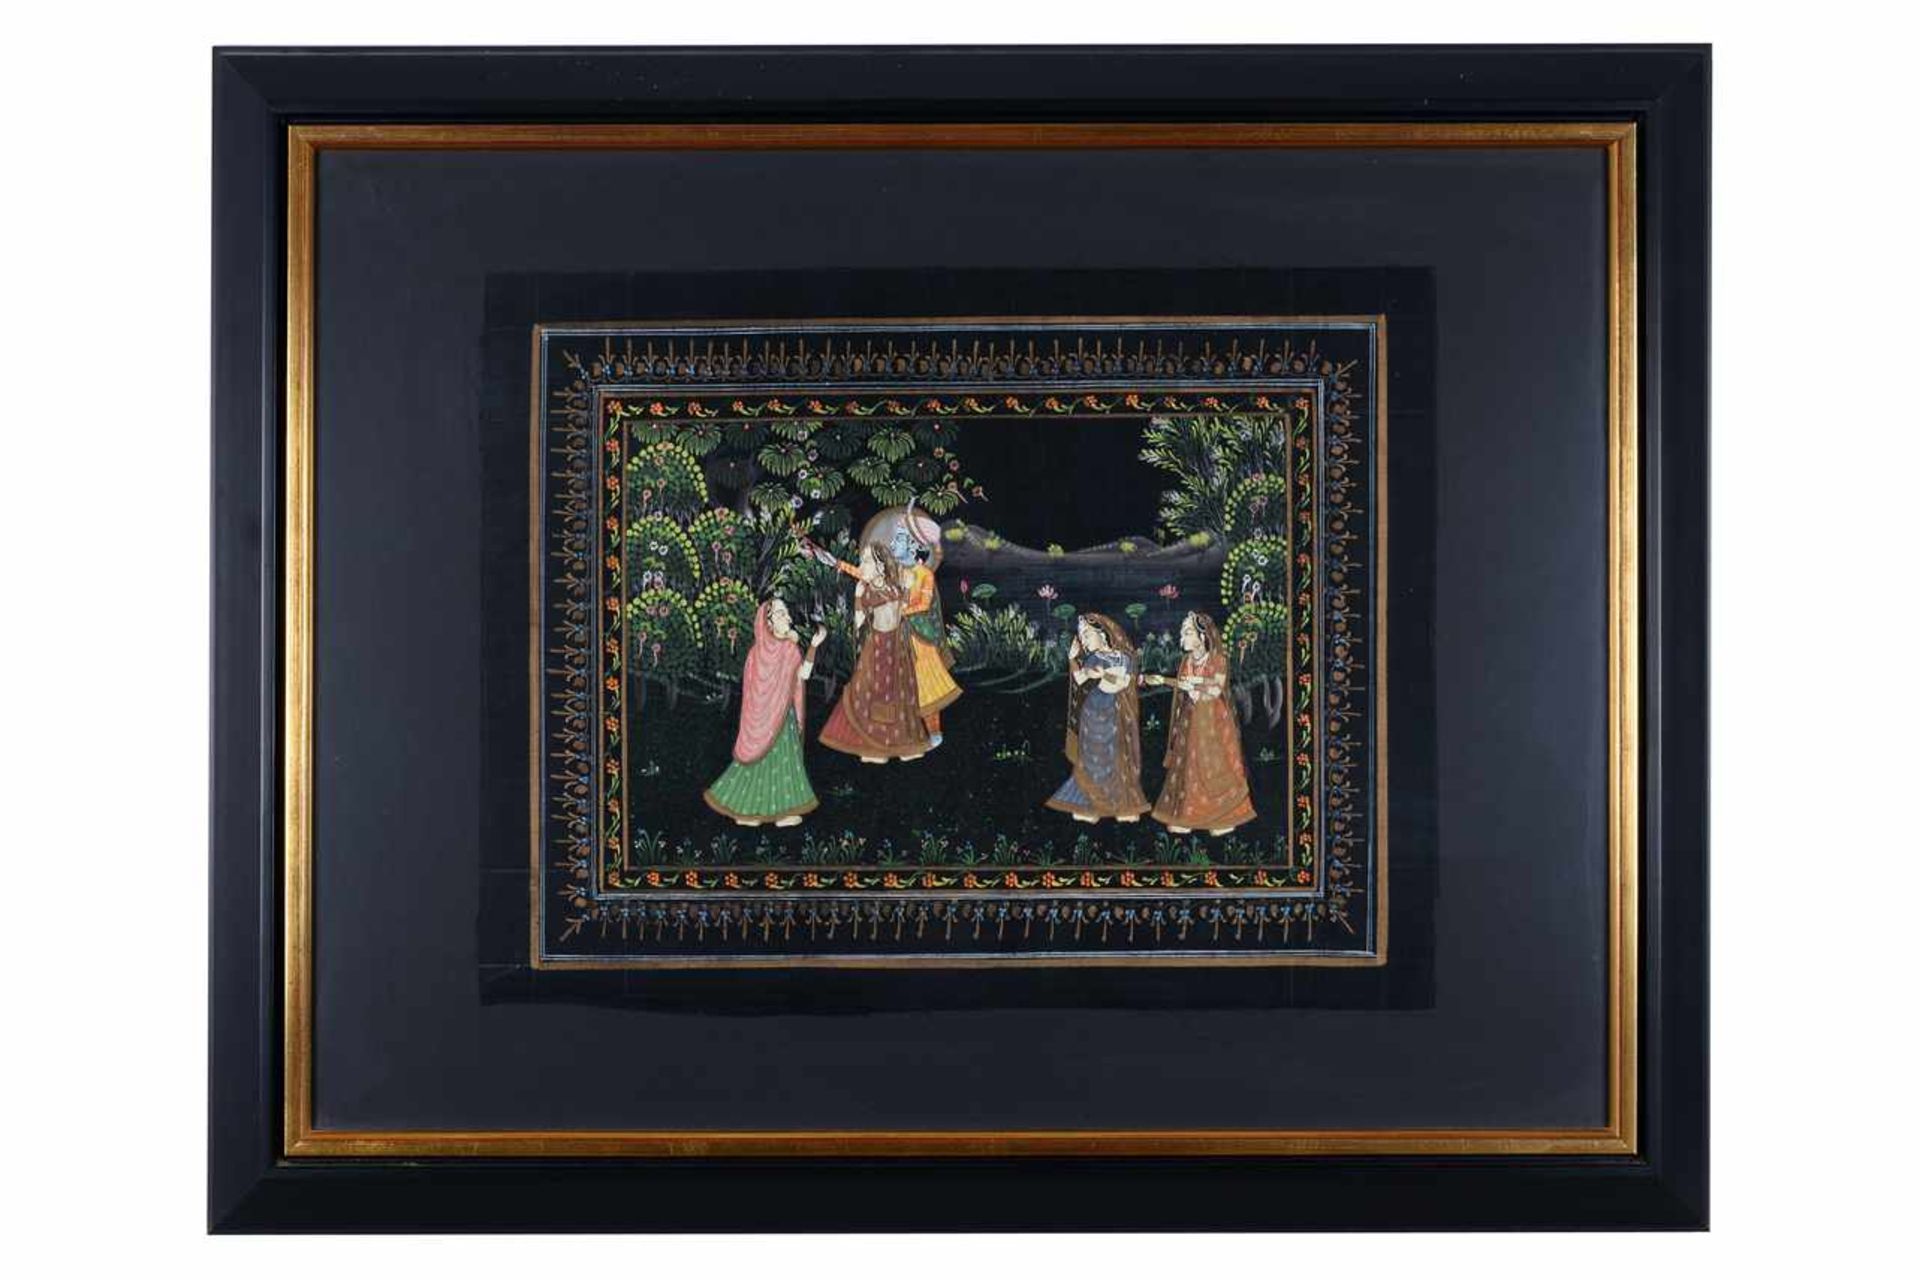 Seidenmalerei, Persien oder Indien.Paradiesische Szene auf schwarzem Textil, hochwertig gerahmt. - Image 2 of 2